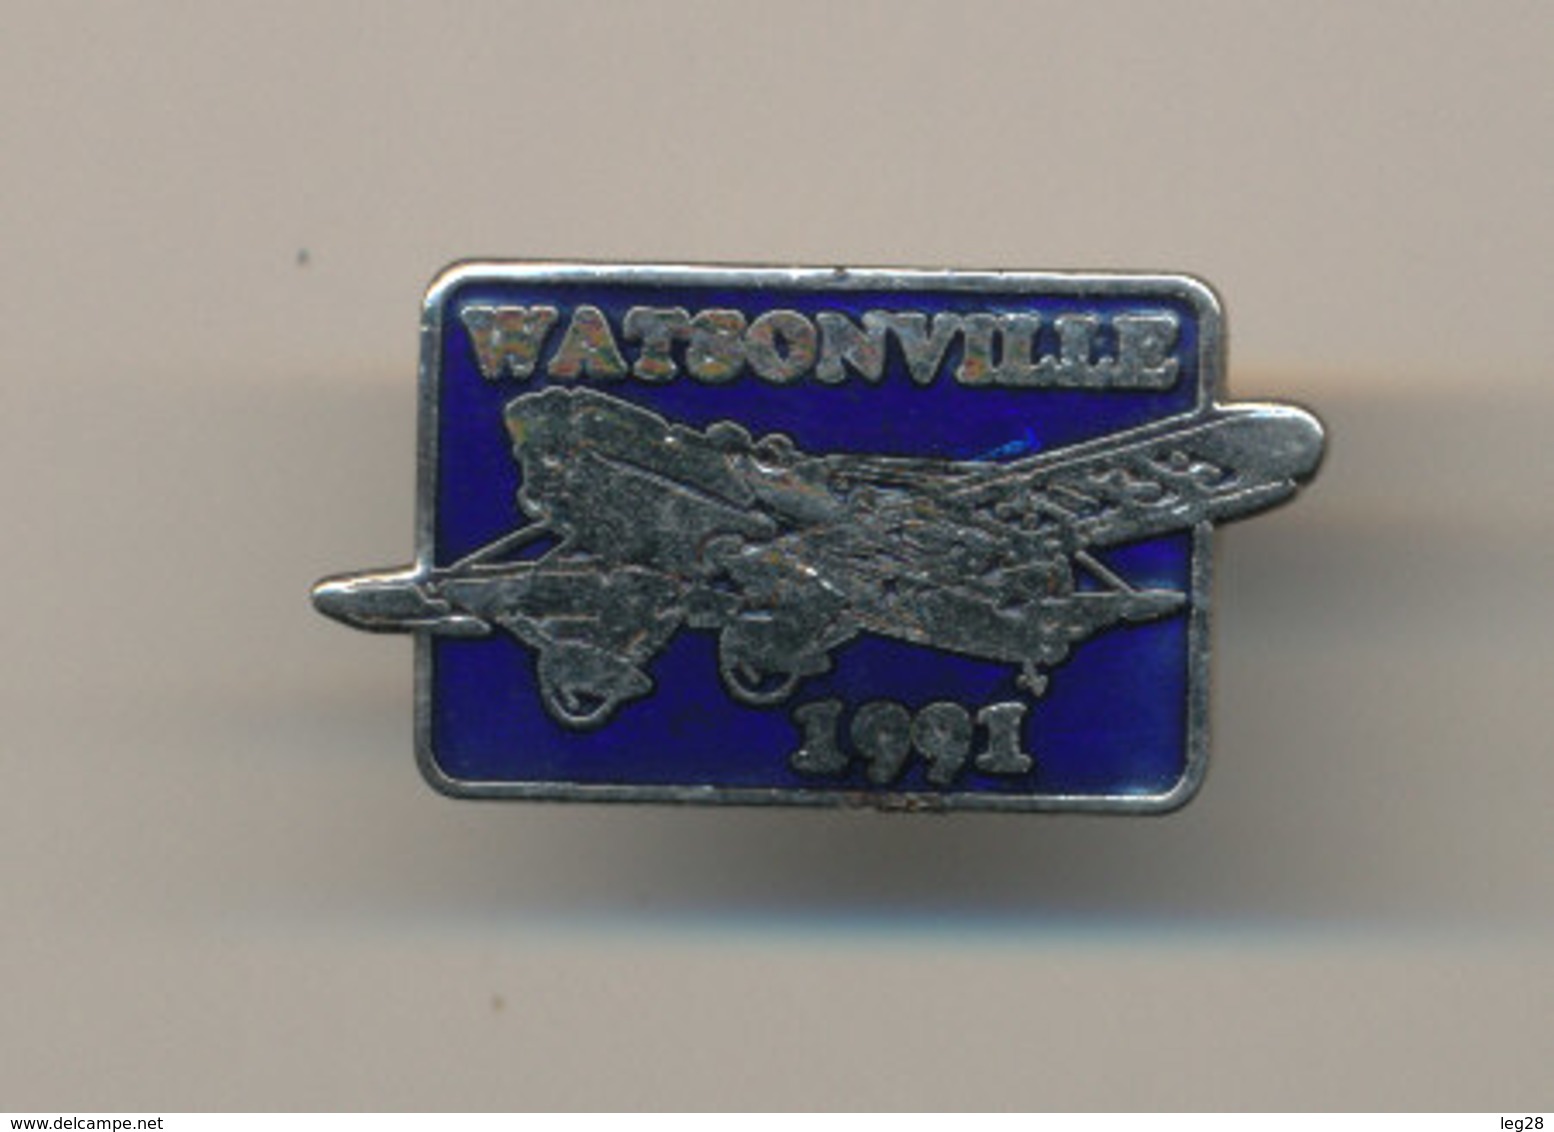 WATSONVILLE 1991 - Avions